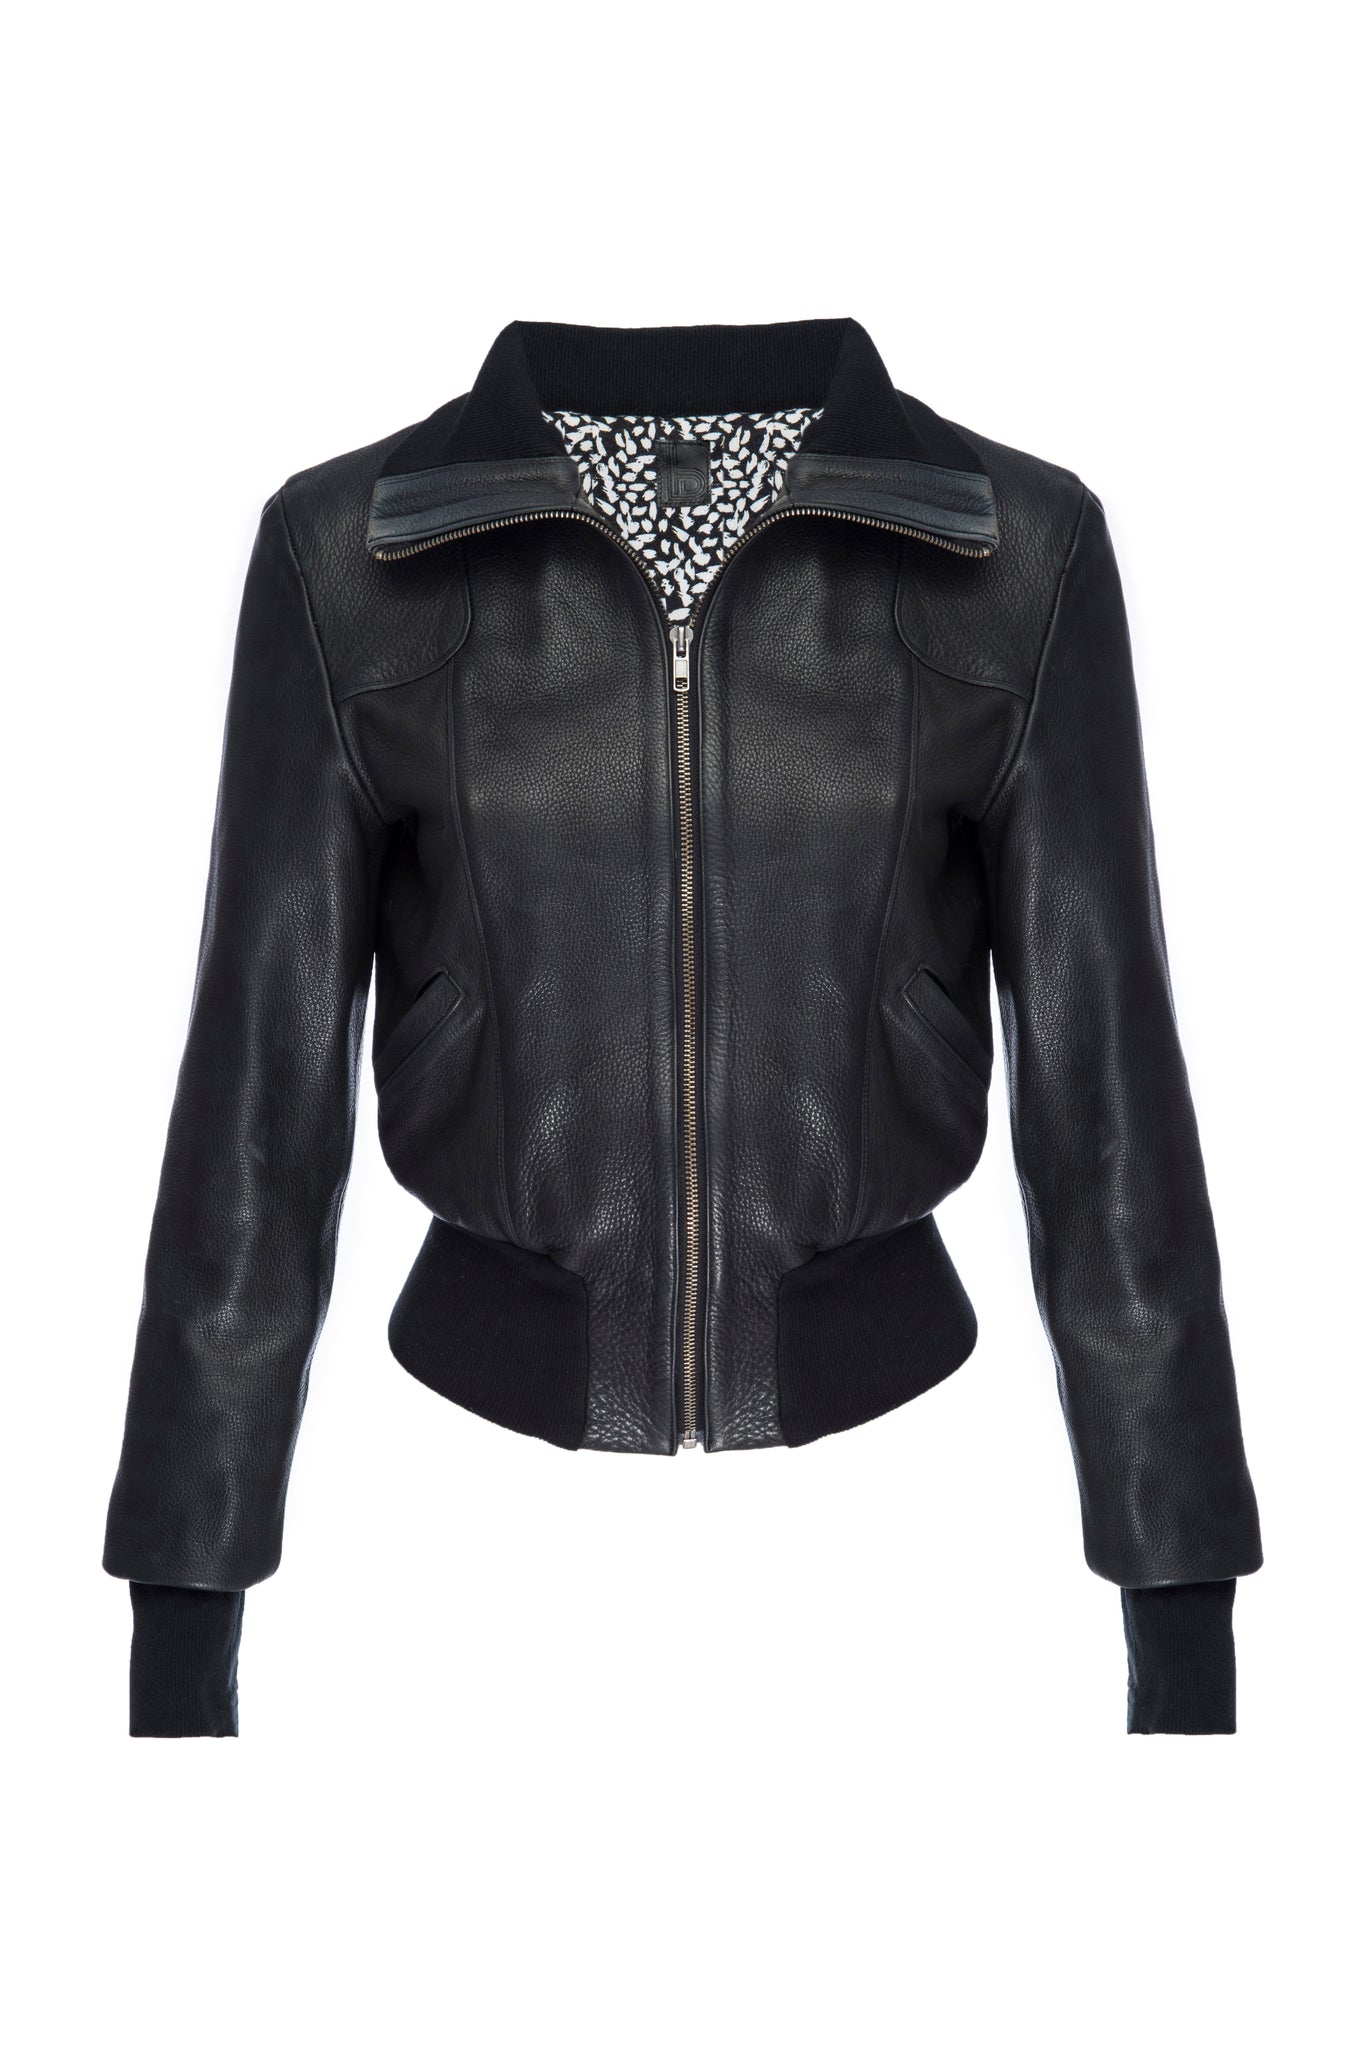 Meredith Leather Jacket